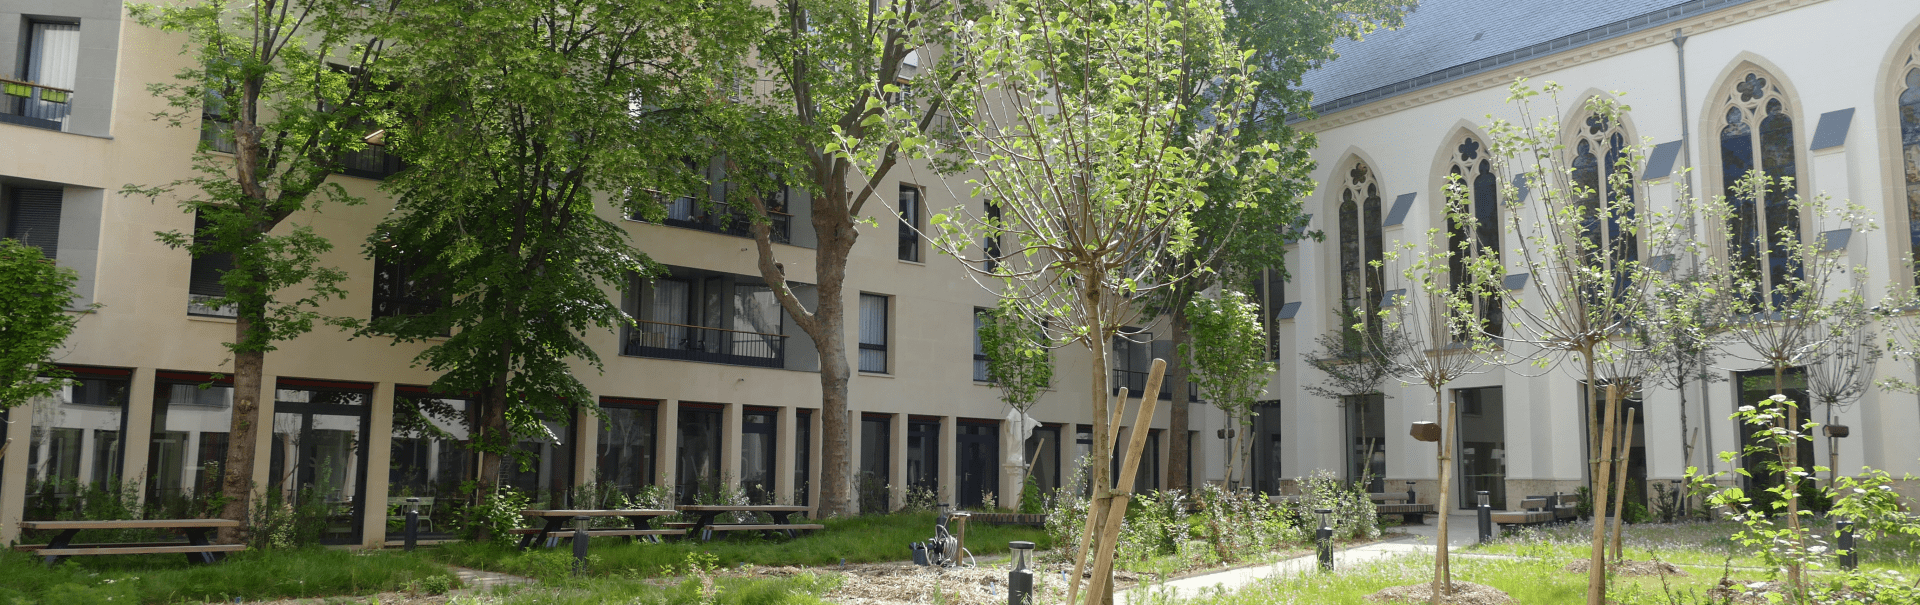 Jardin aménagé de la Maison Saint-Charles